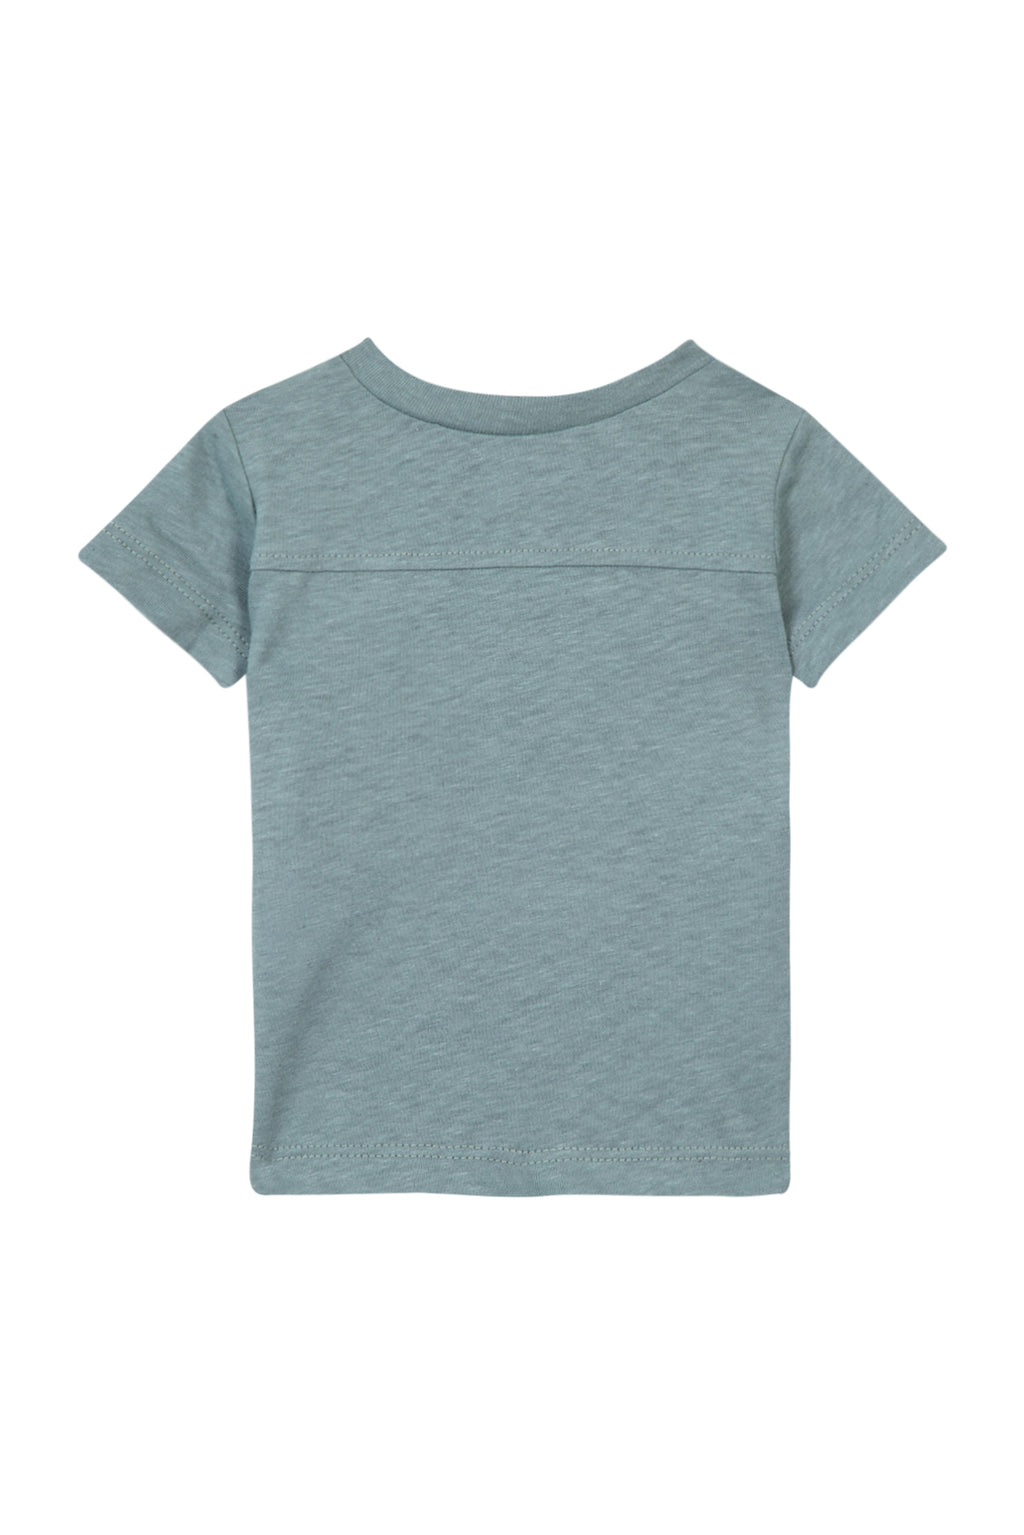 T -Shirt - Grün von Grau Illustration Abenteurer